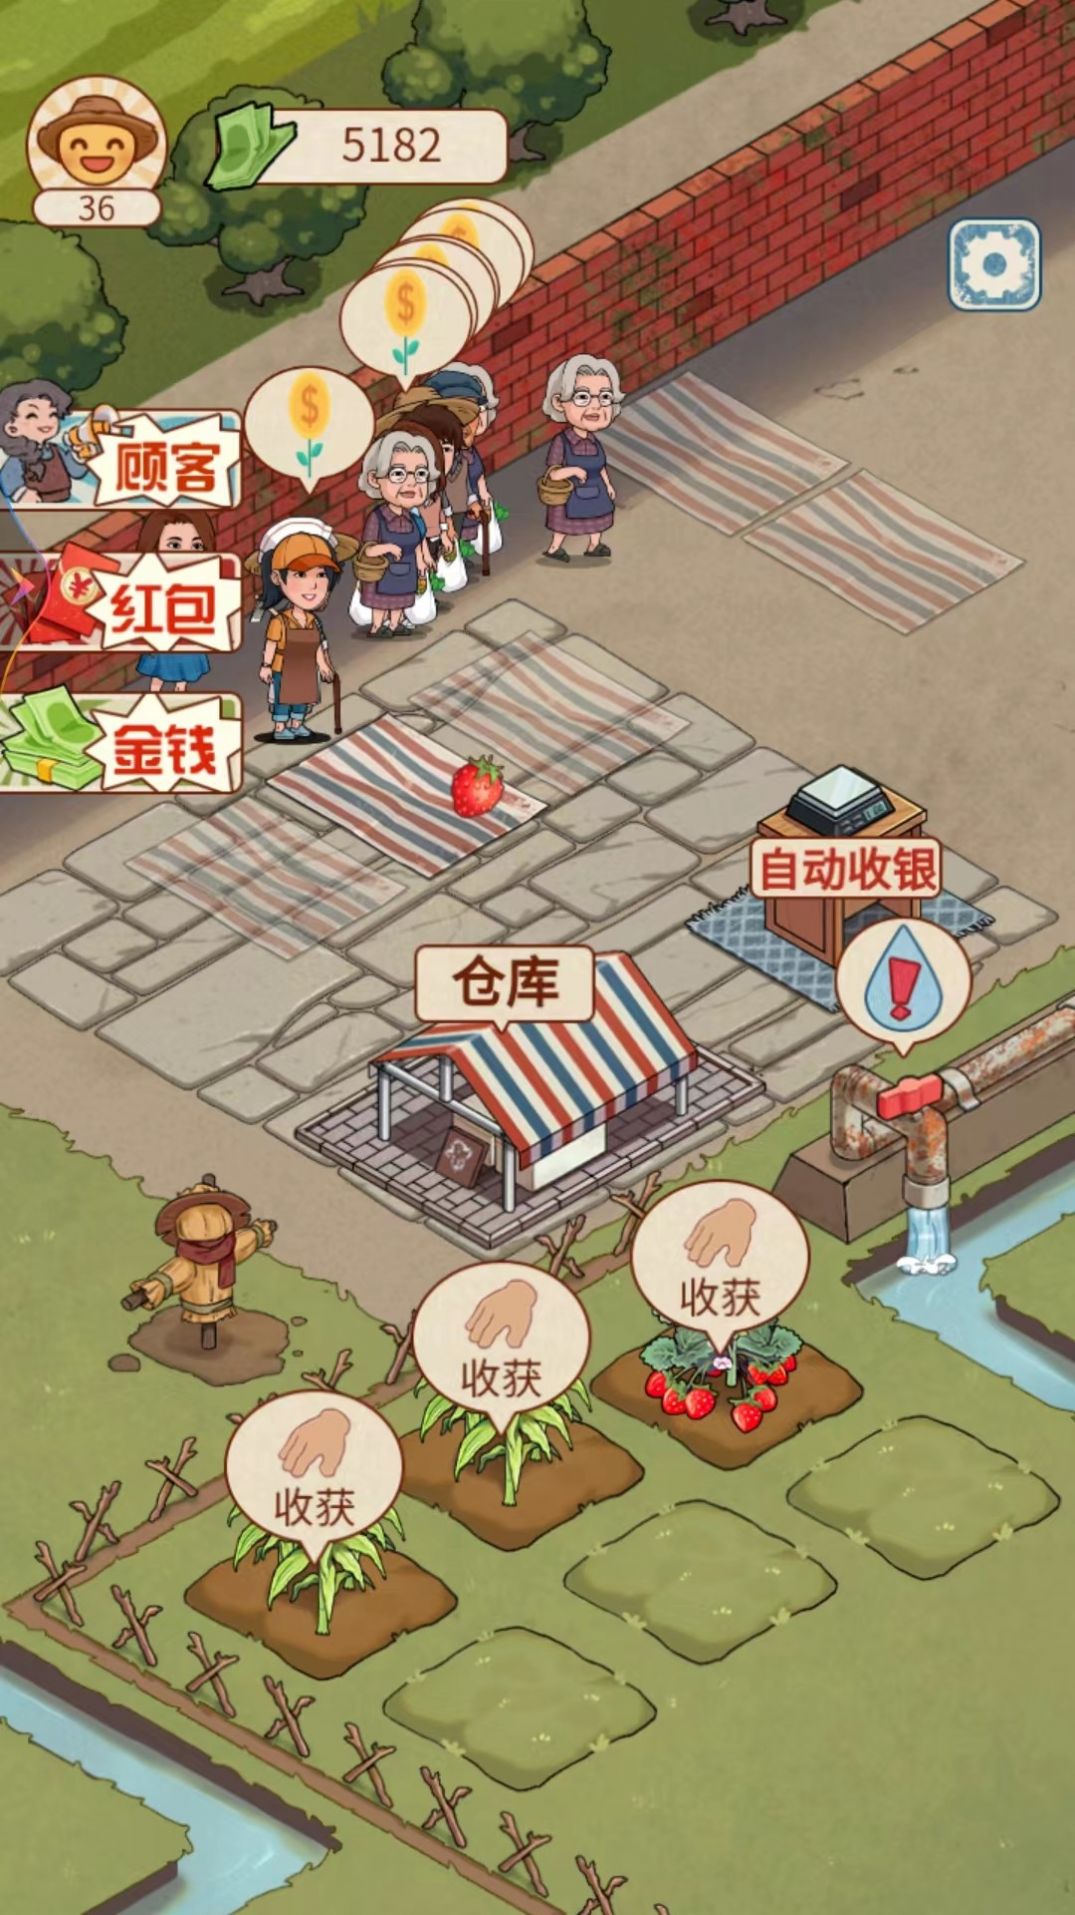 老王的菜市场游戏免广告下载安装图2: